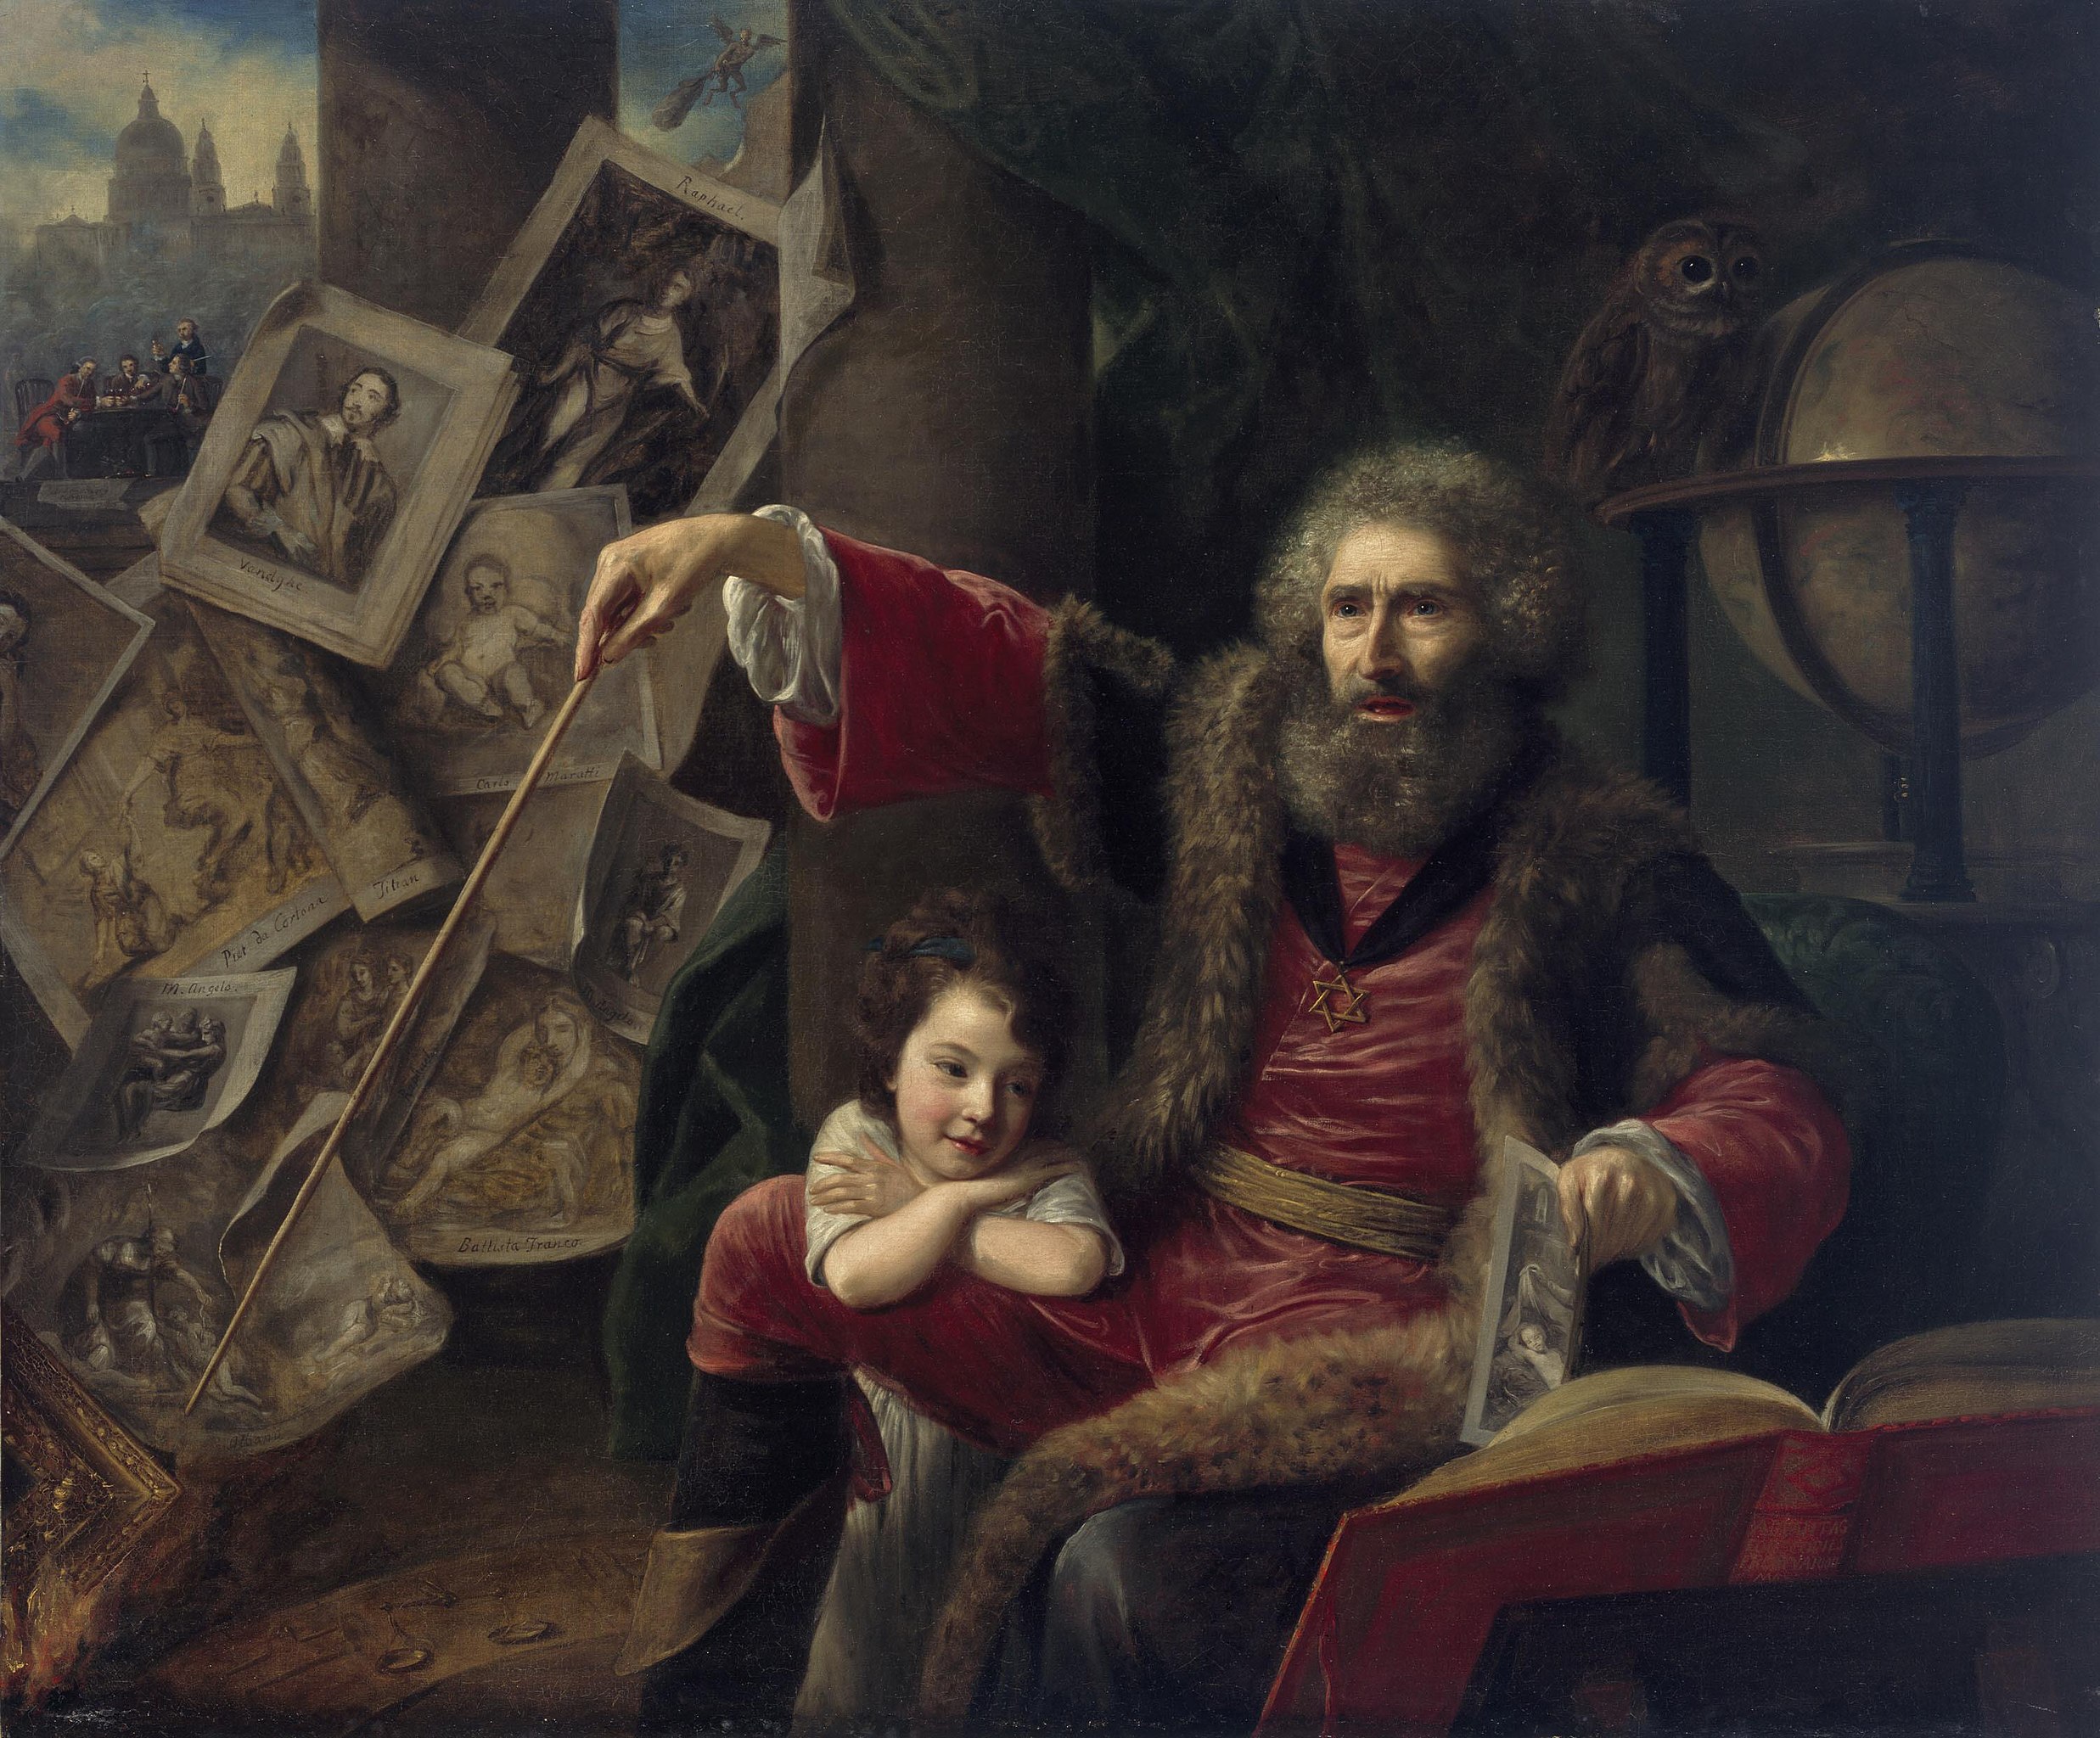 Kejklíř (Obrazový kouzelník předvádějící celé umění optického klamu) by Nathaniel Hone the Elder - 1775 - 145 x 173 cm 